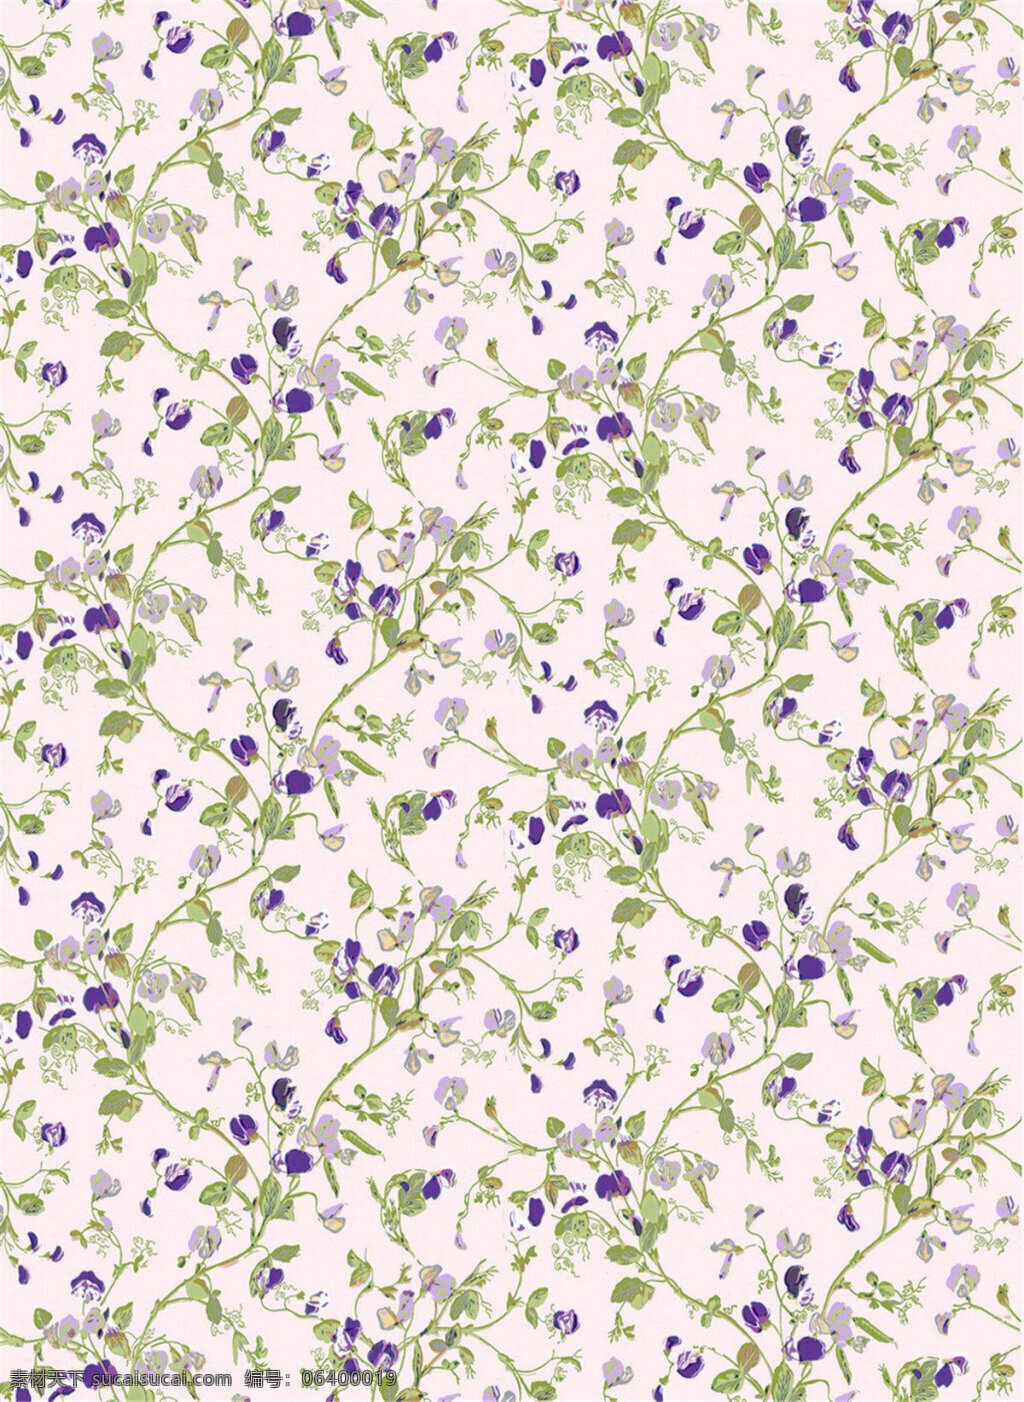 清新 雅致 淡 黄色 底纹 壁纸 图案 壁纸图案 花朵壁纸 蓝紫色花朵 绿色树叶 植物壁纸